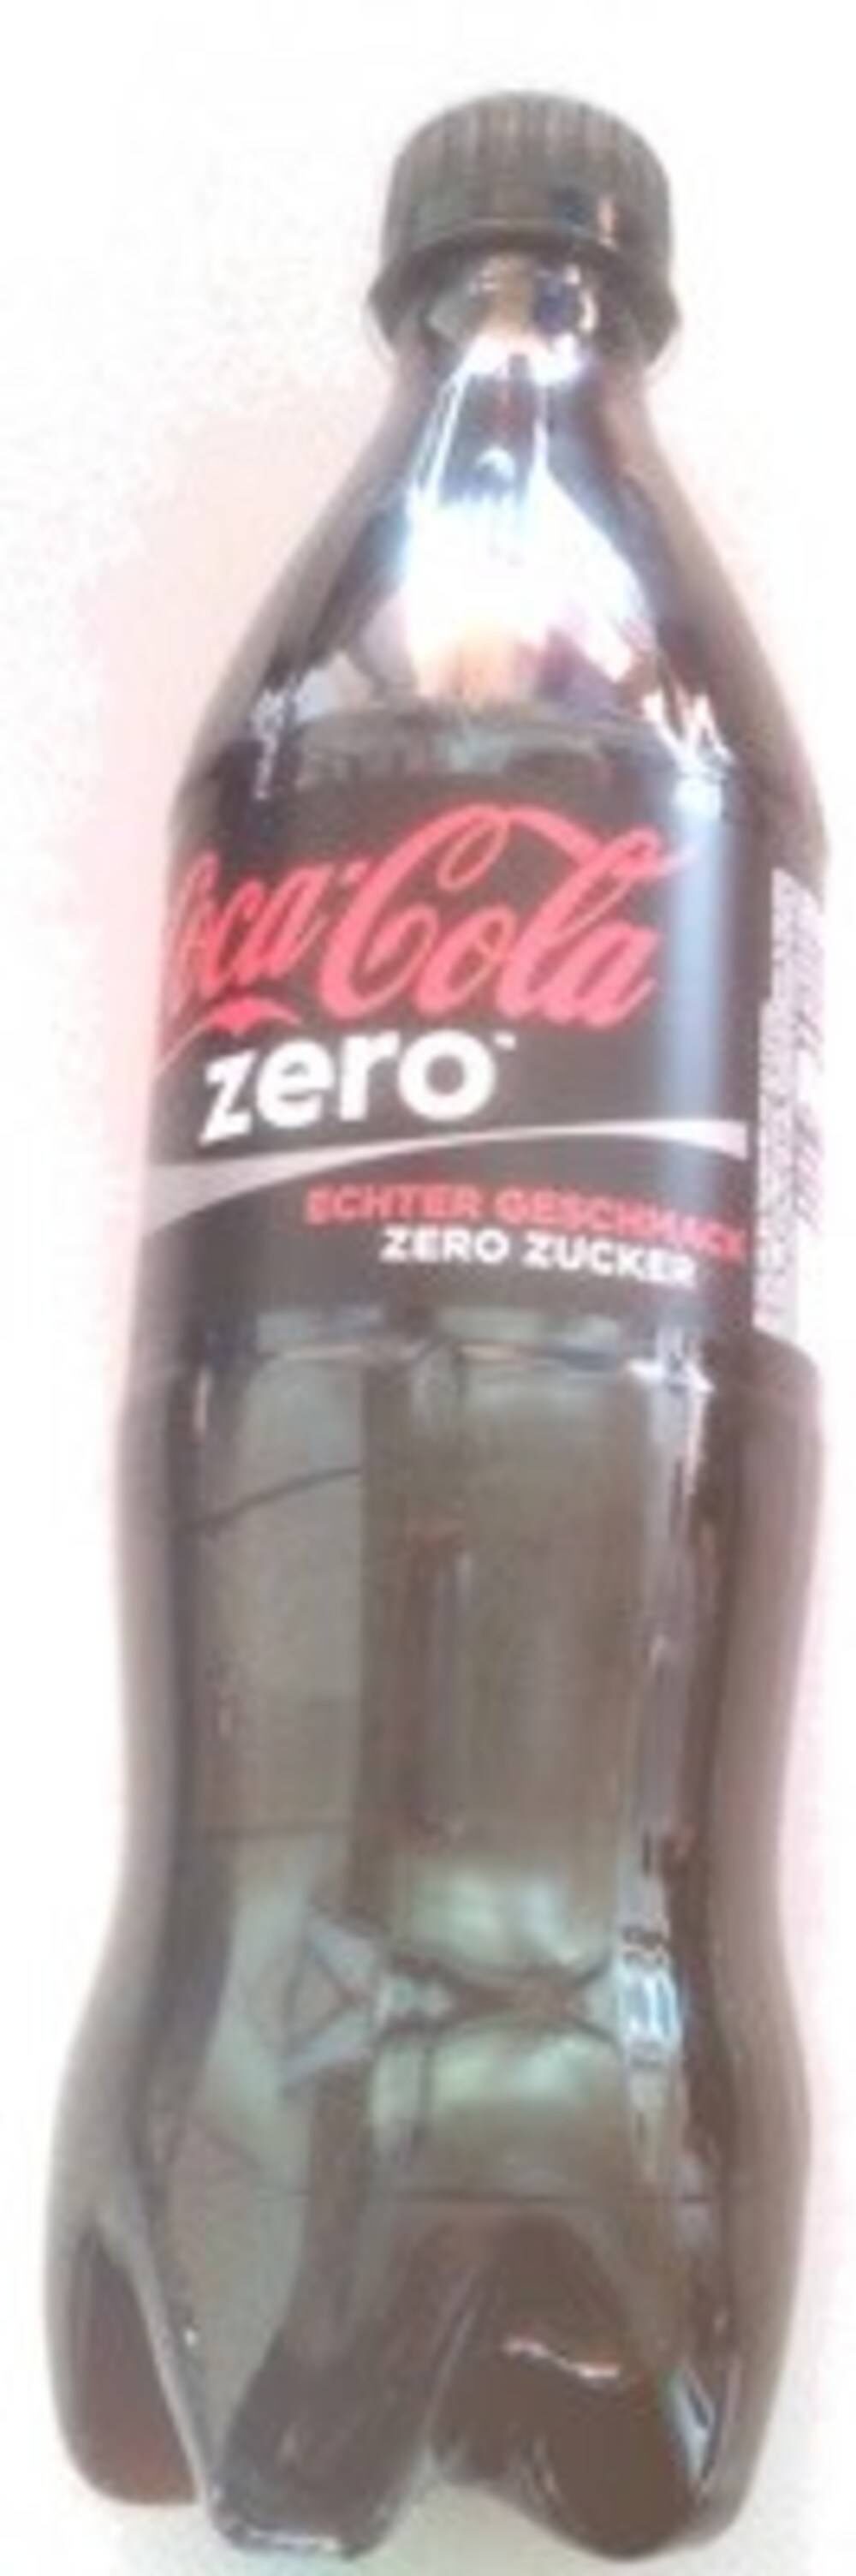 Coca Cola Zero 0.5 - Prodotto - en